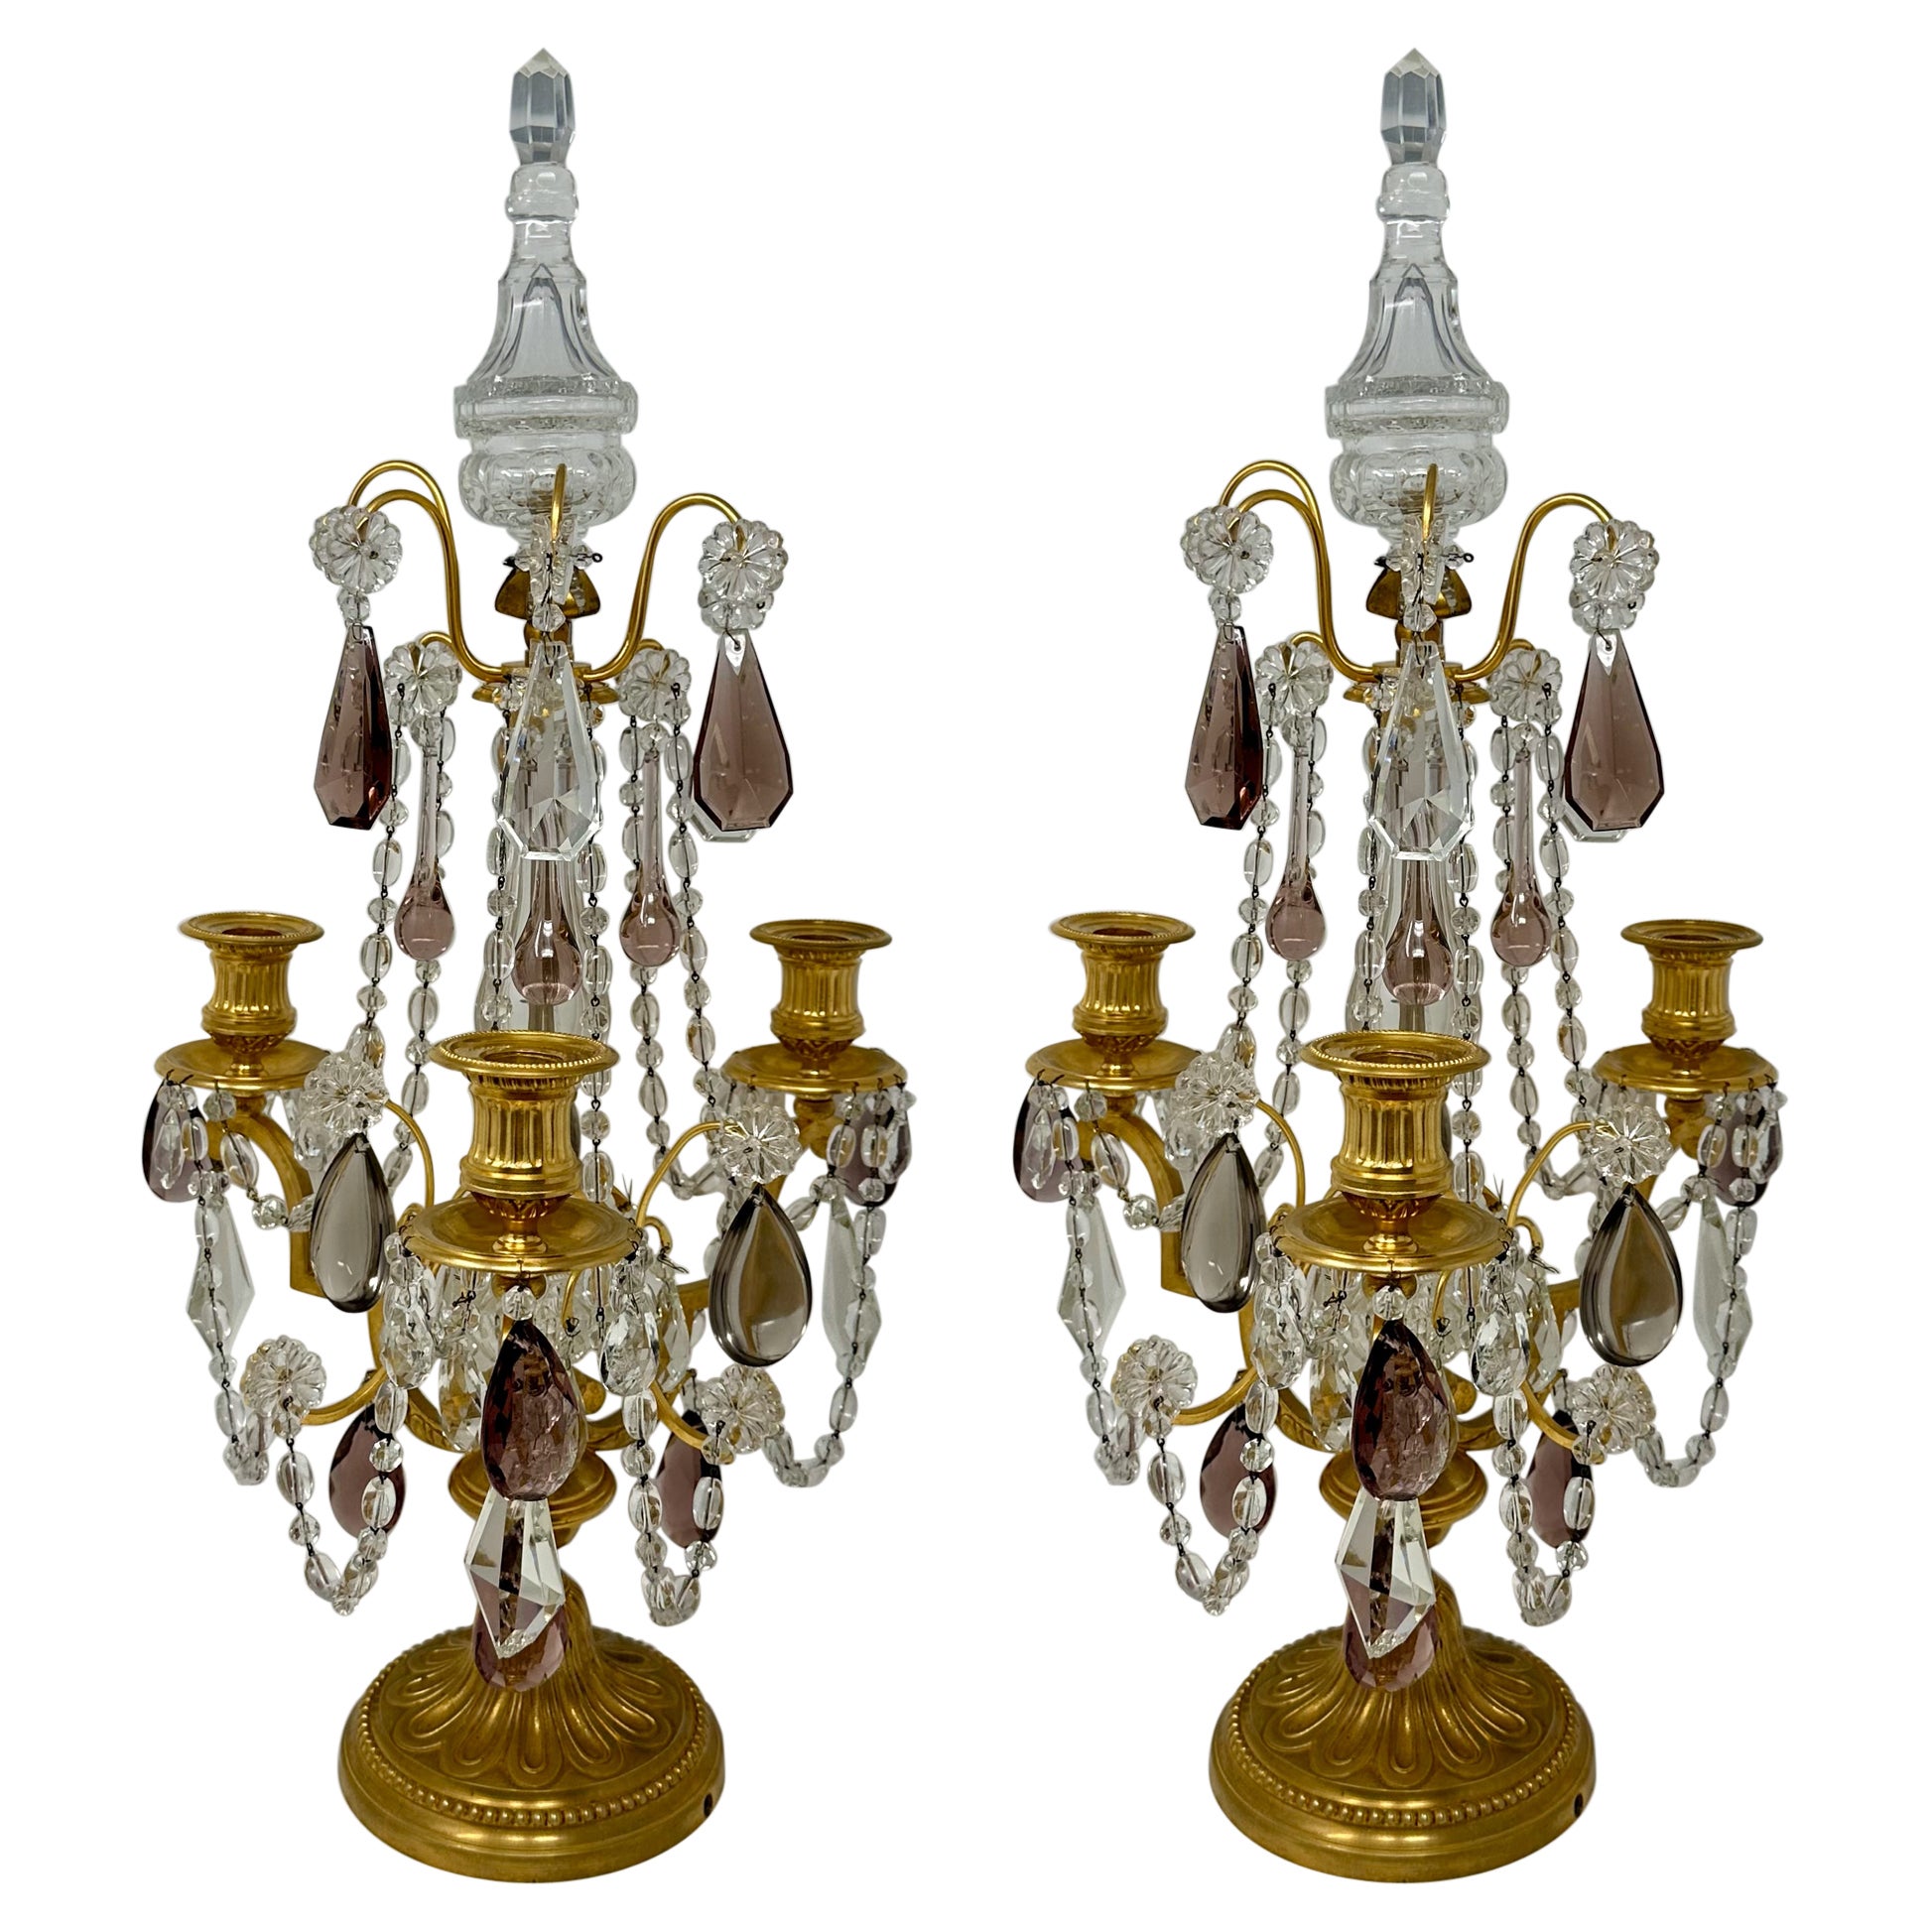 Paire de Girondoles françaises anciennes en cristal taillé et bronze d'or, vers 1890.